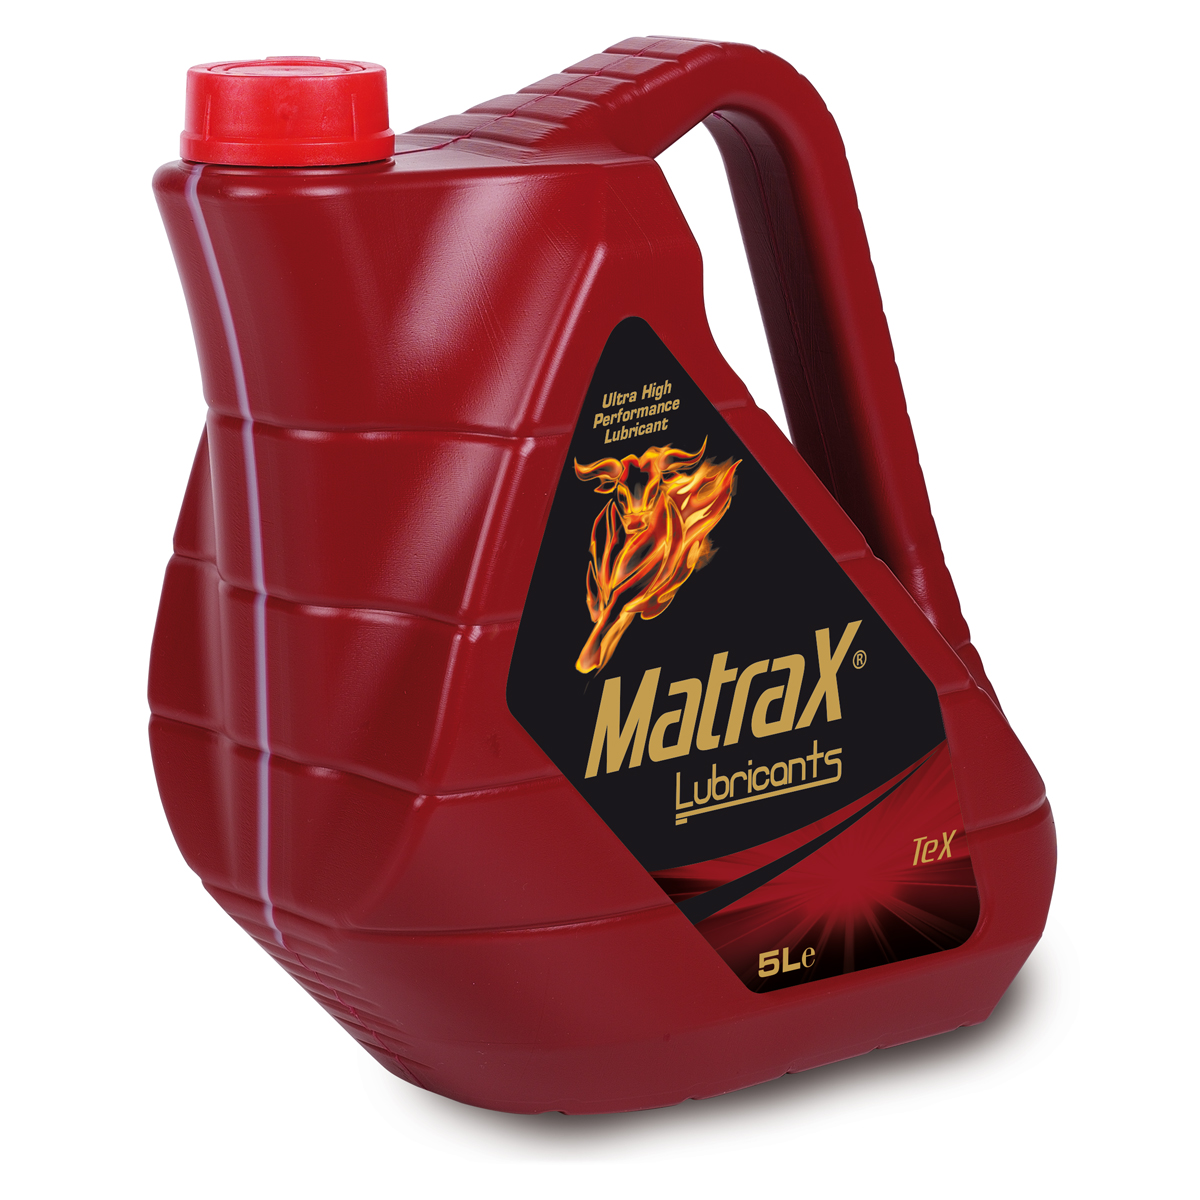 matrax-lubricants-tex-5l